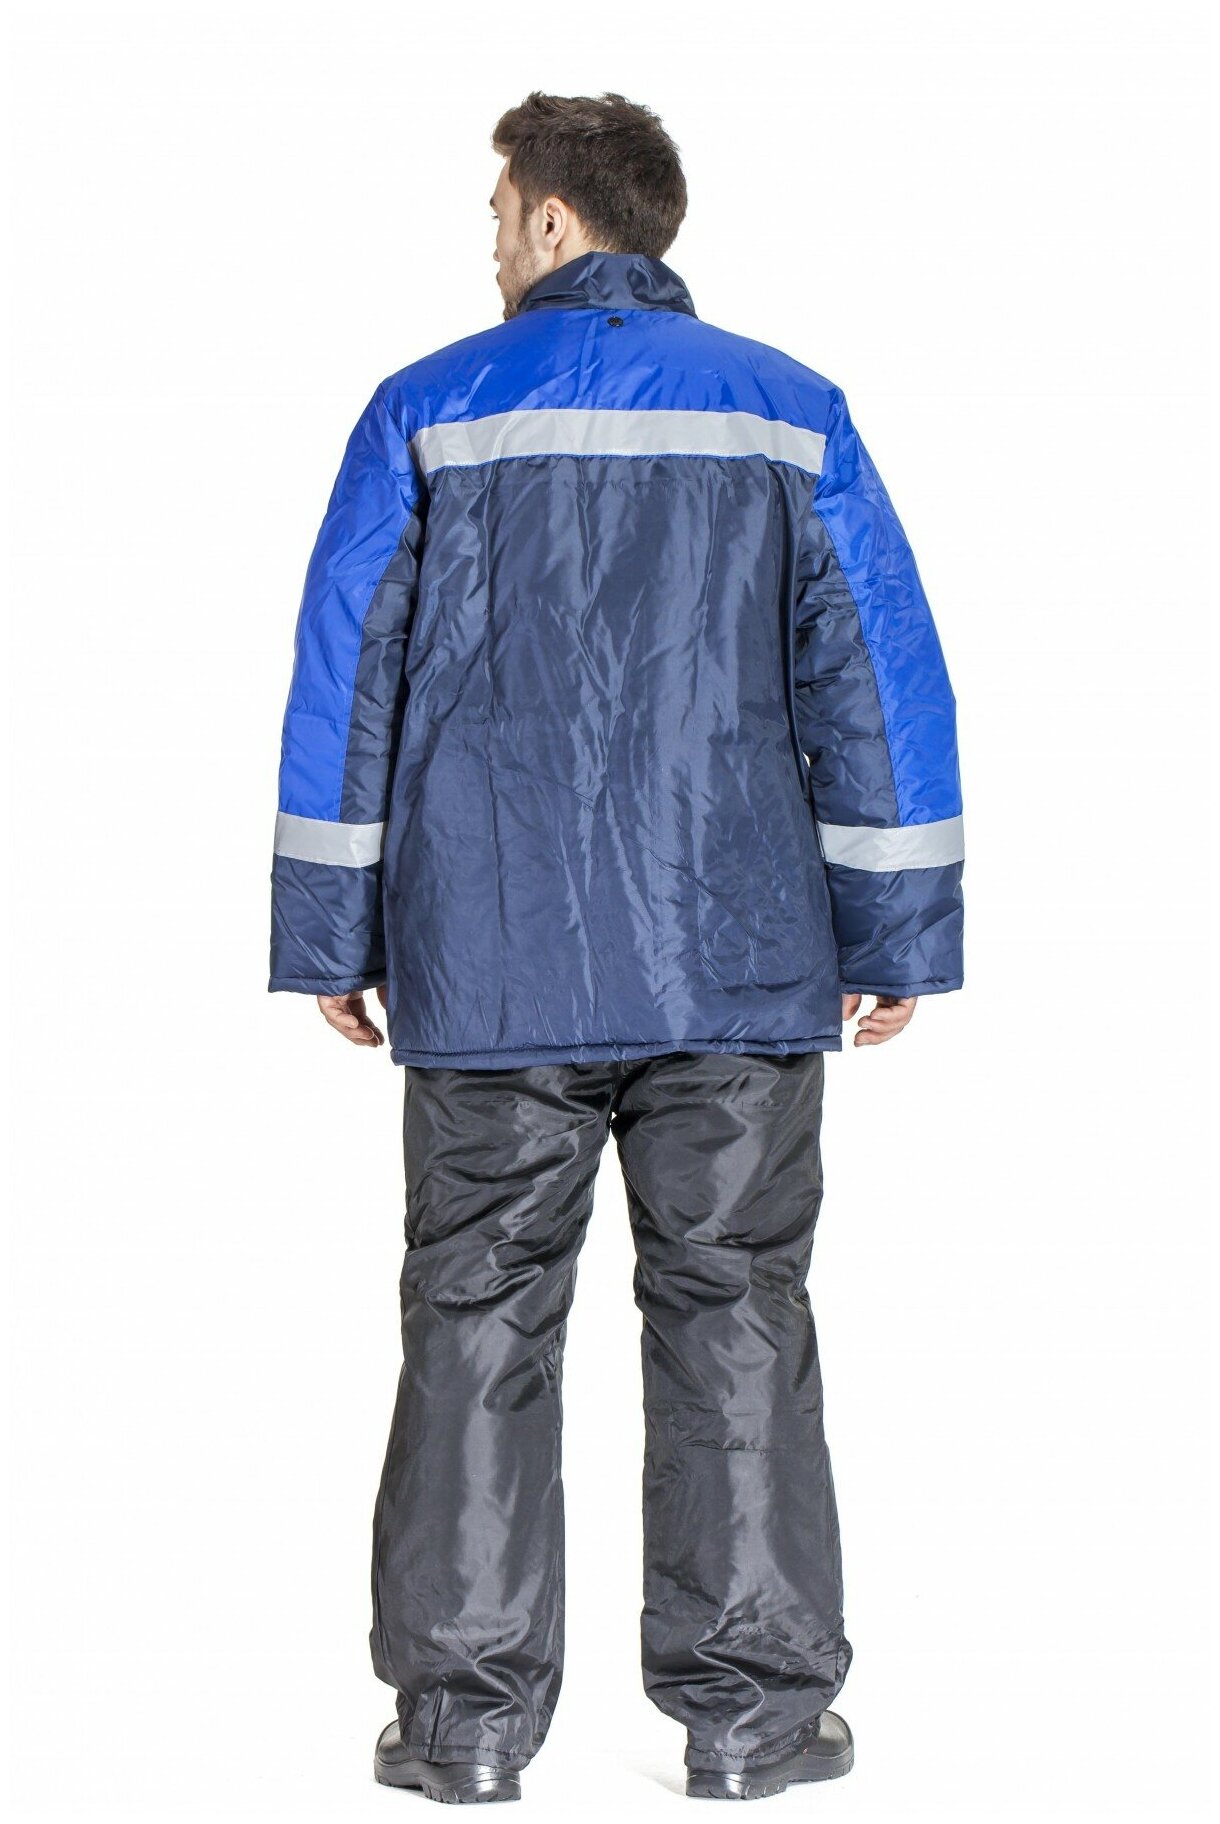 Куртка зимняя "Стандарт" синяя с васильковым. Размер:112-116. Рост:170-176